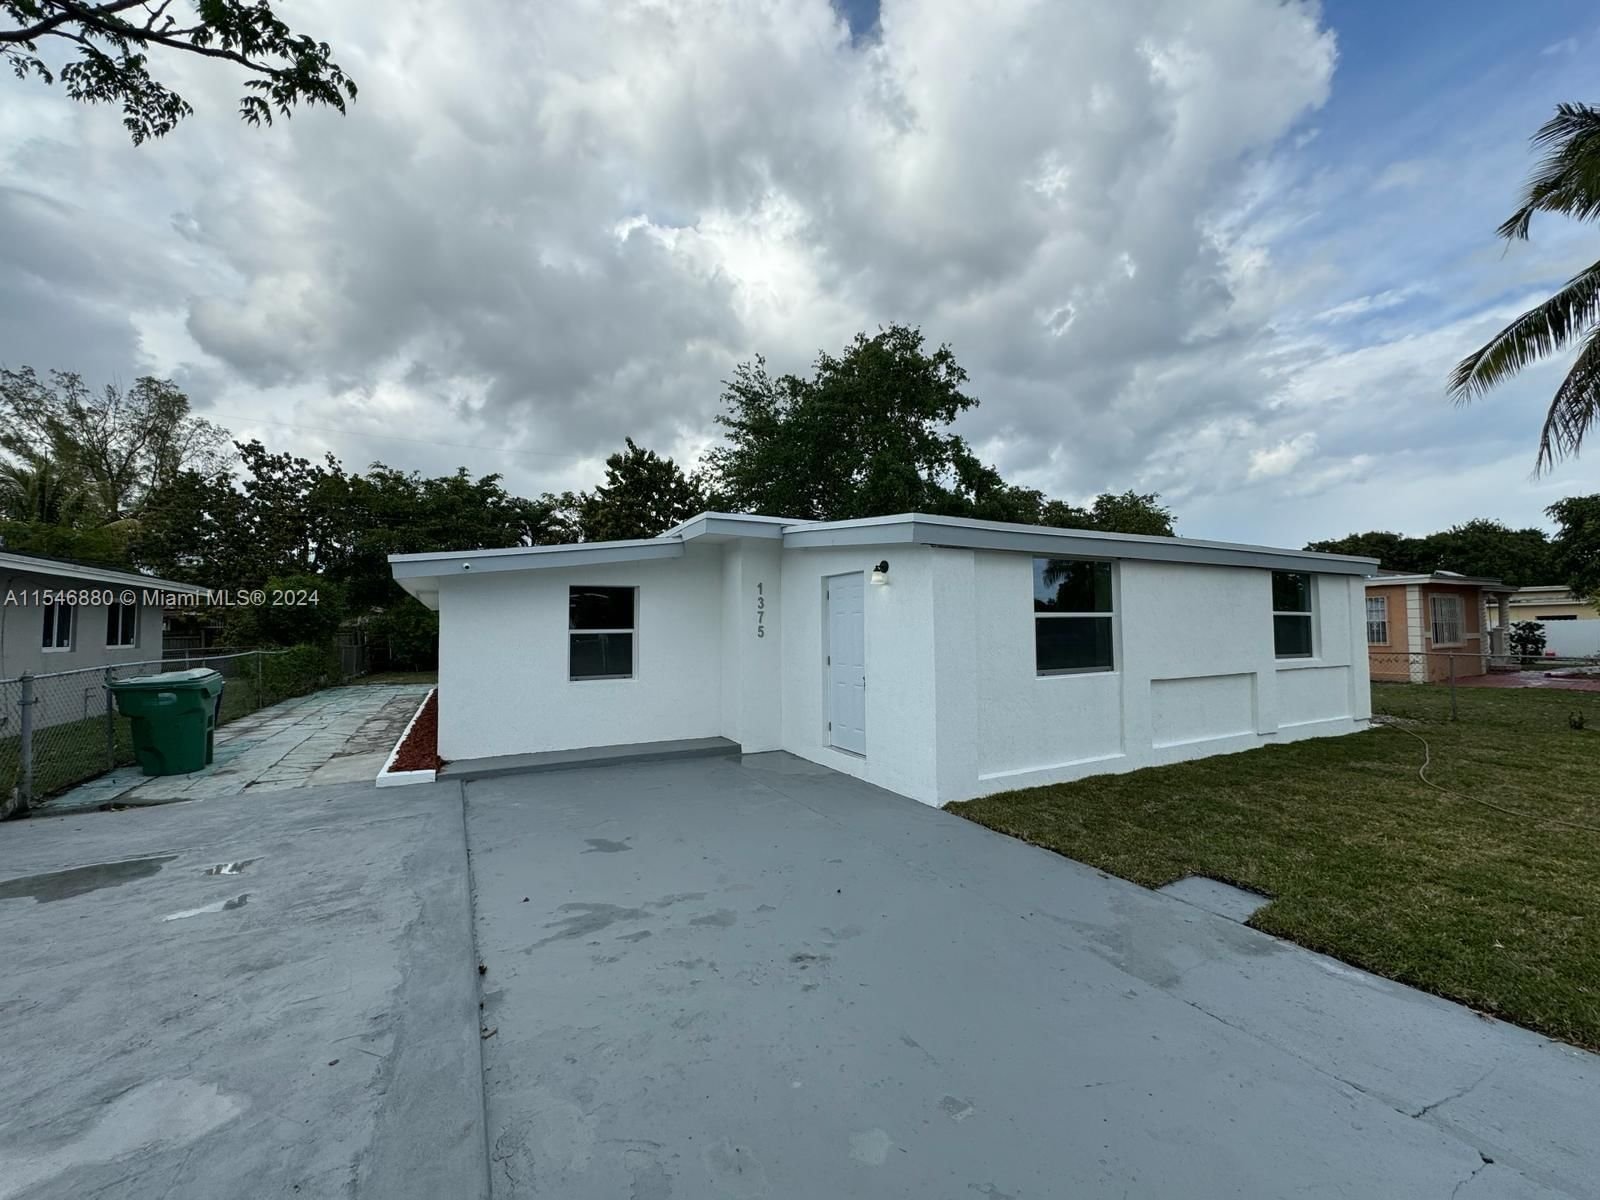 Real estate property located at 1375 116th St, Miami-Dade County, SUNSHINE VILLAGE, Miami, FL